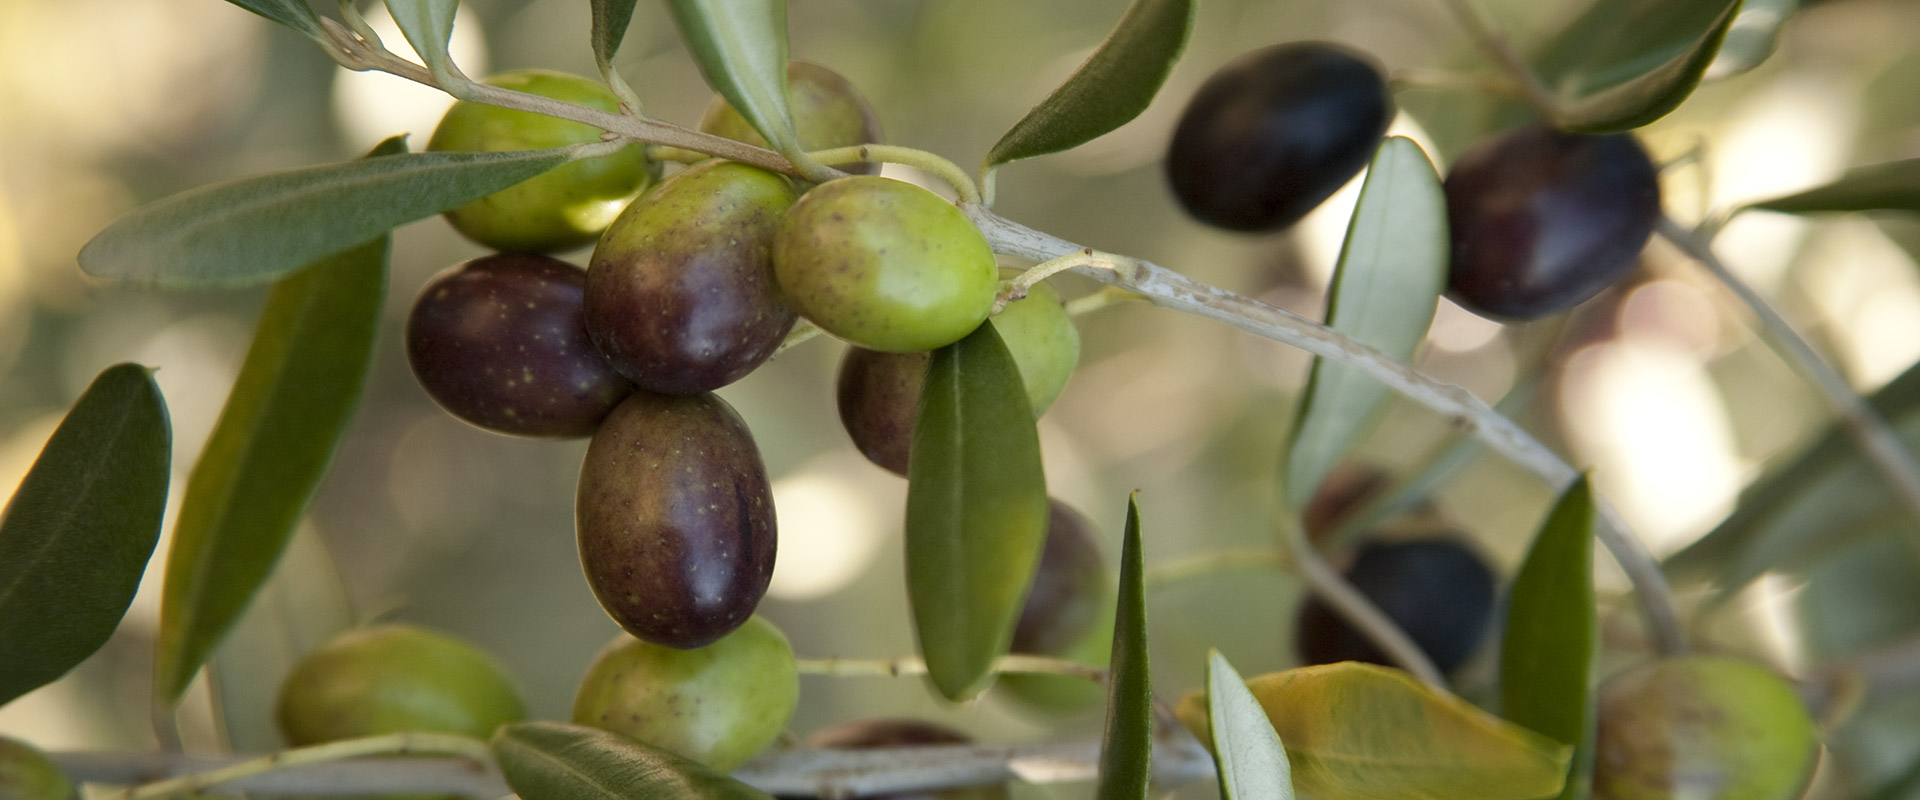 In che periodo si raccolgono le olive – Fratelli Carli